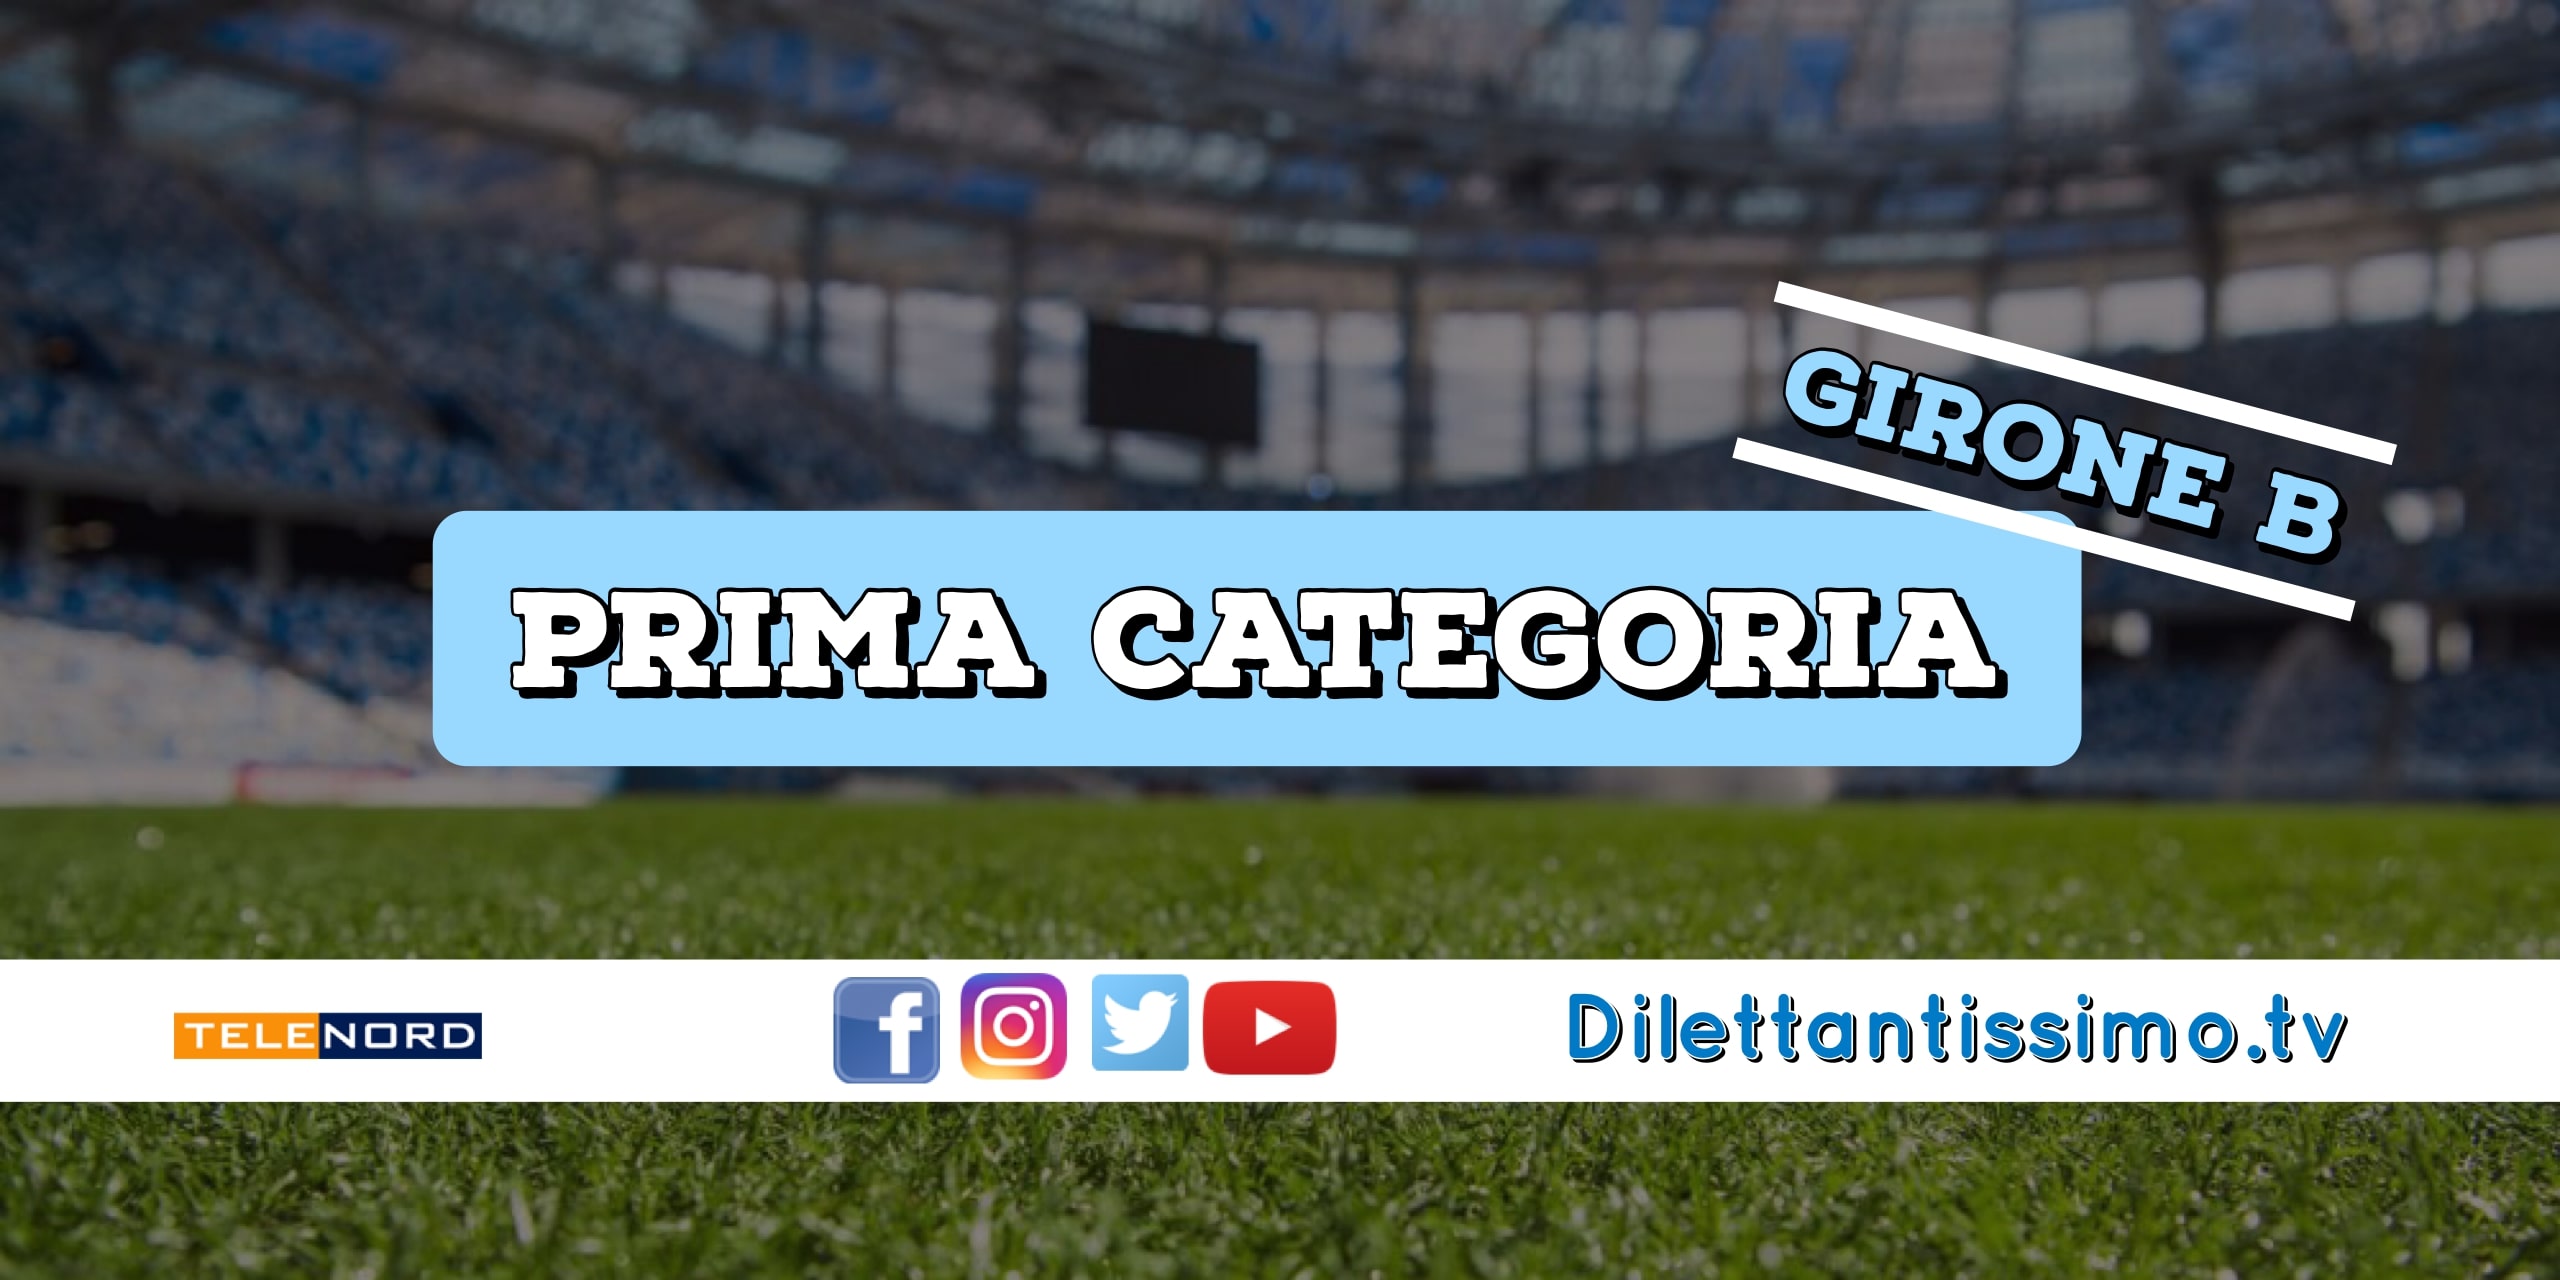 DIRETTA LIVE – PRIMA CATEGORIA B, 25ª GIORNATA: RISULTATI E CLASSIFICA